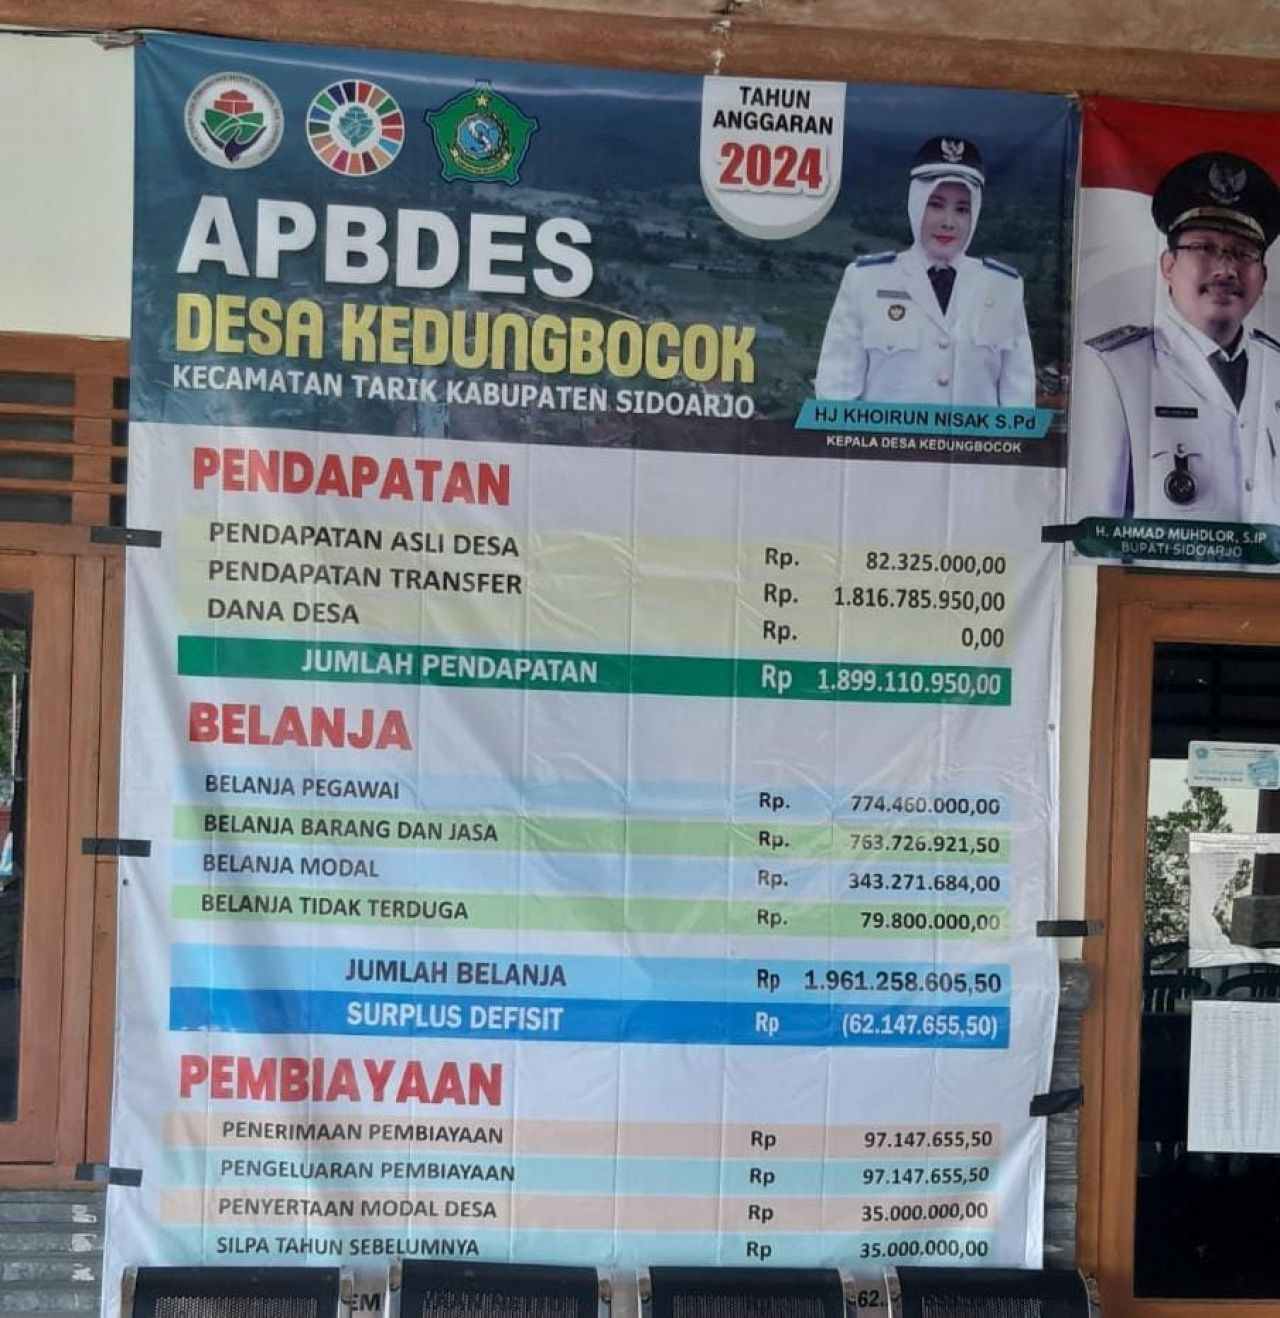 Wujudkan Transparansi Publik, Pemdes Kedungbocok Pampang Baliho Info Grafis APBDes